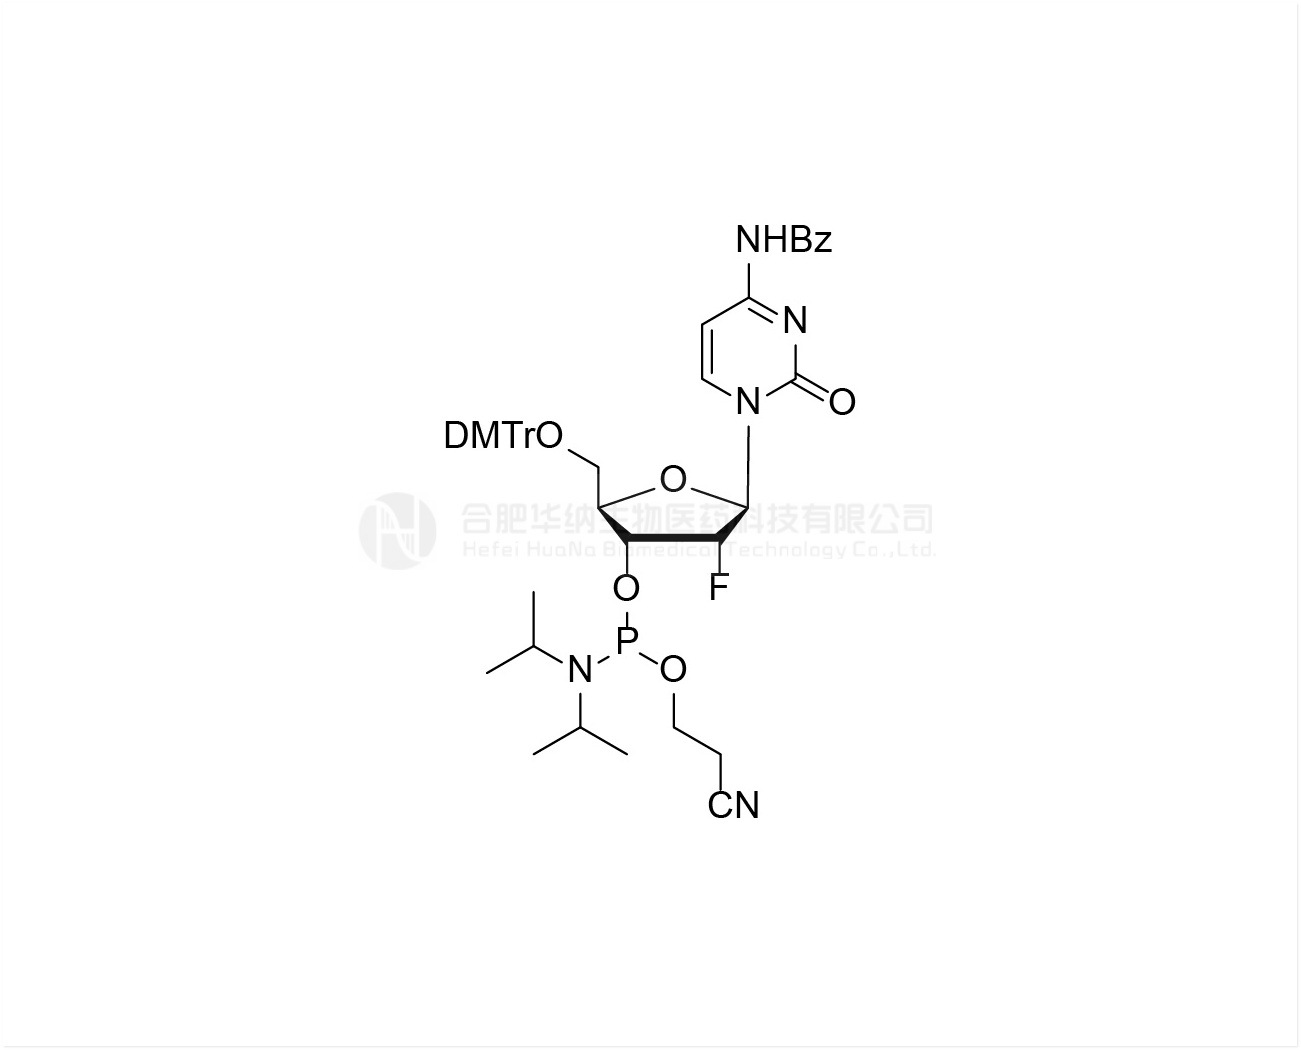 DMTr-2'-F-dC(Bz)-3'-CE-Phosphoramidite